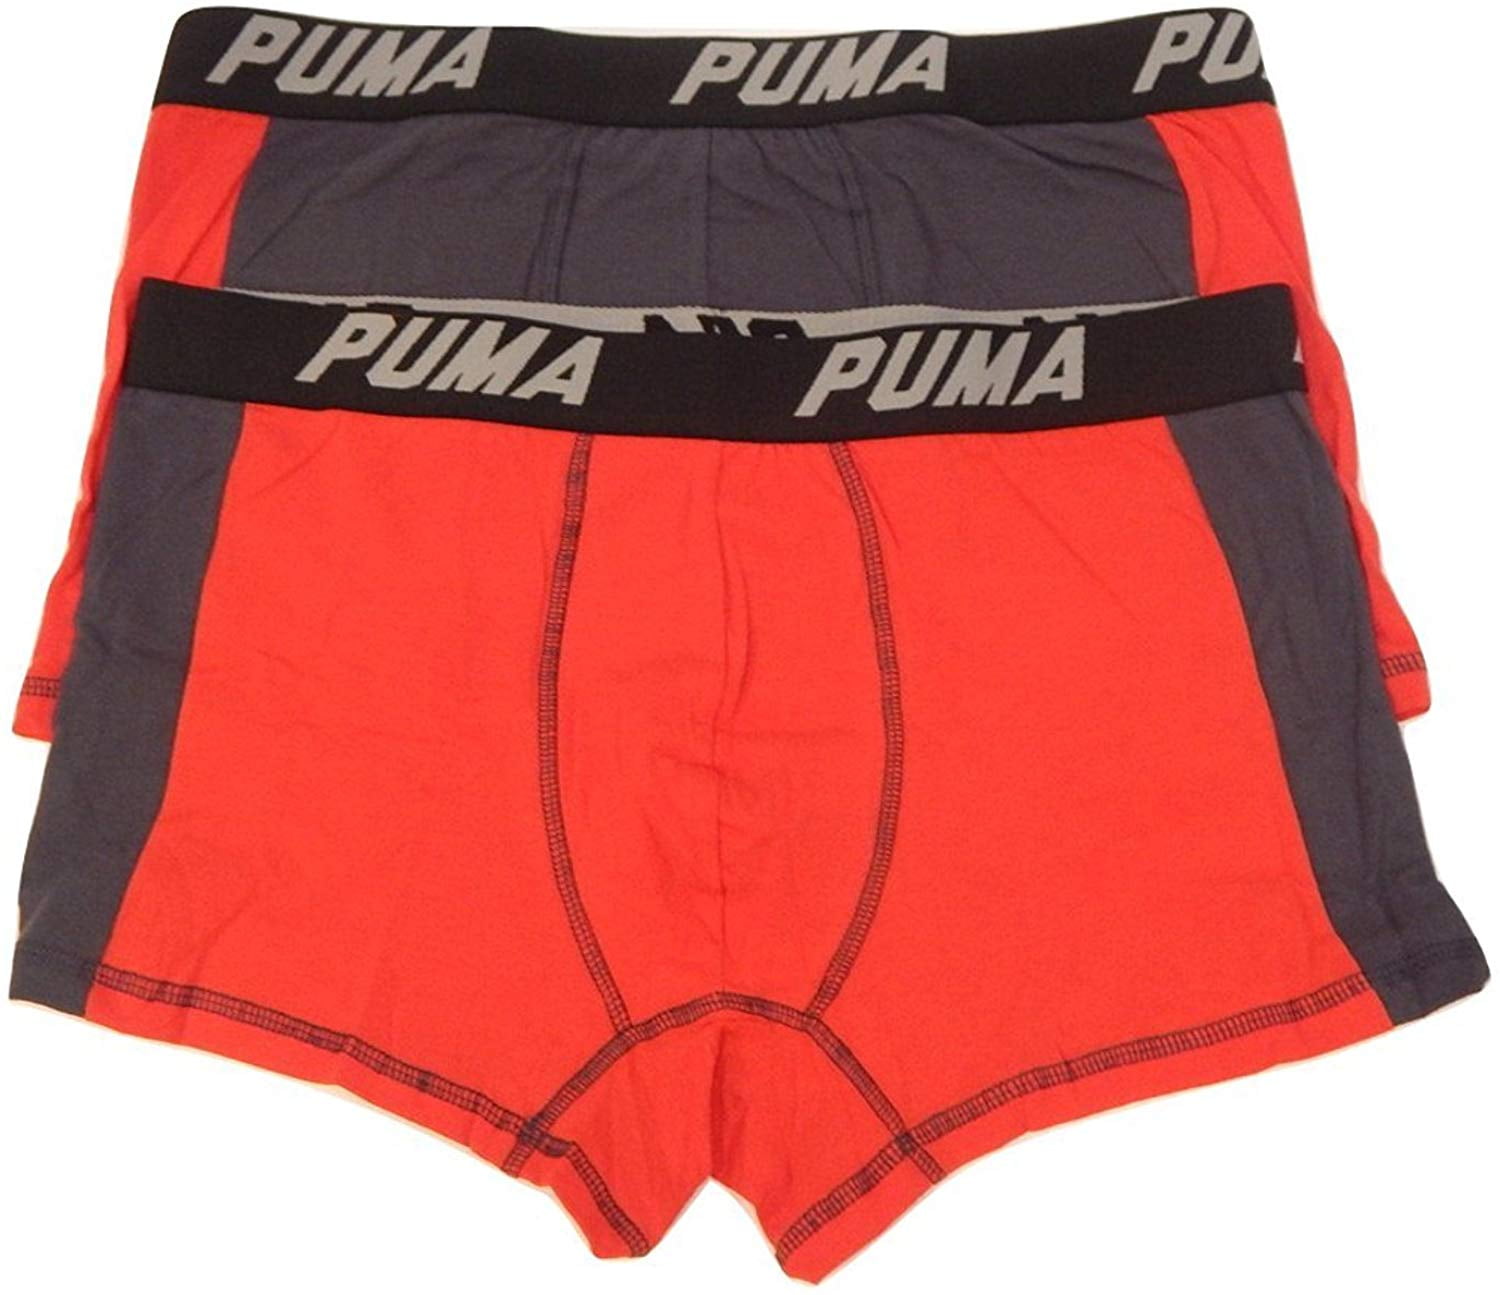 men's puma underwear